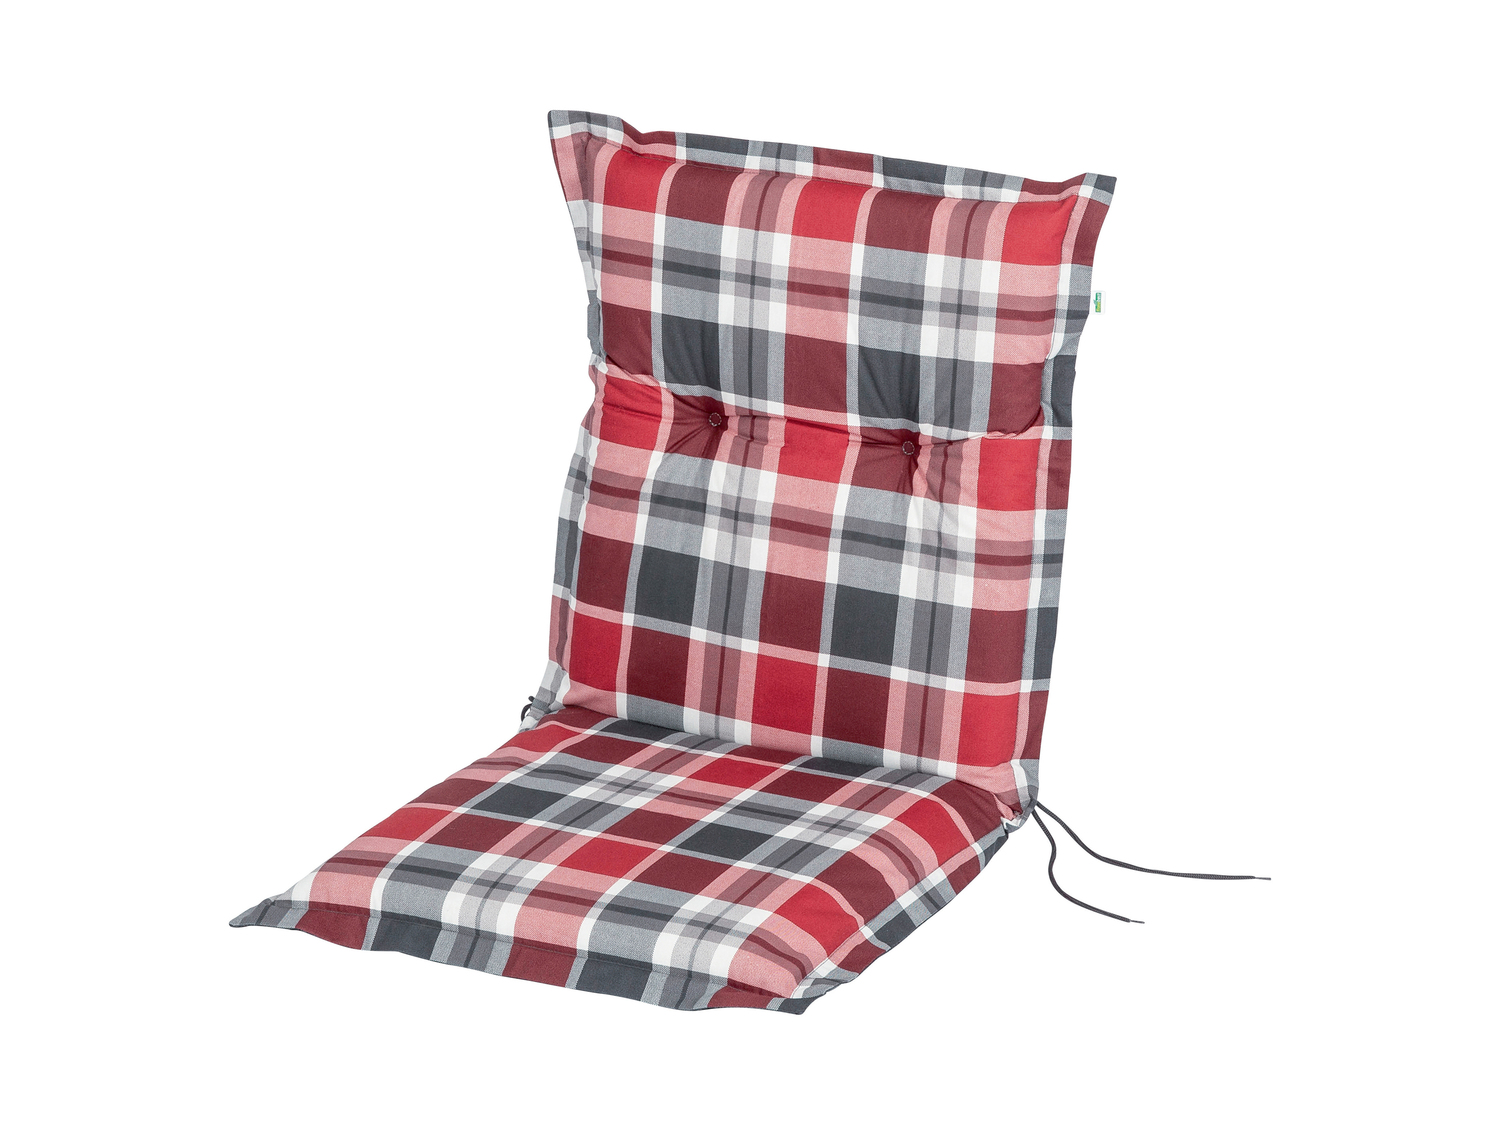 Cuscino per sedia sdraio Florabest, prezzo 9.99 &#8364; 
50 x 100 cm 
- Prodotto ...